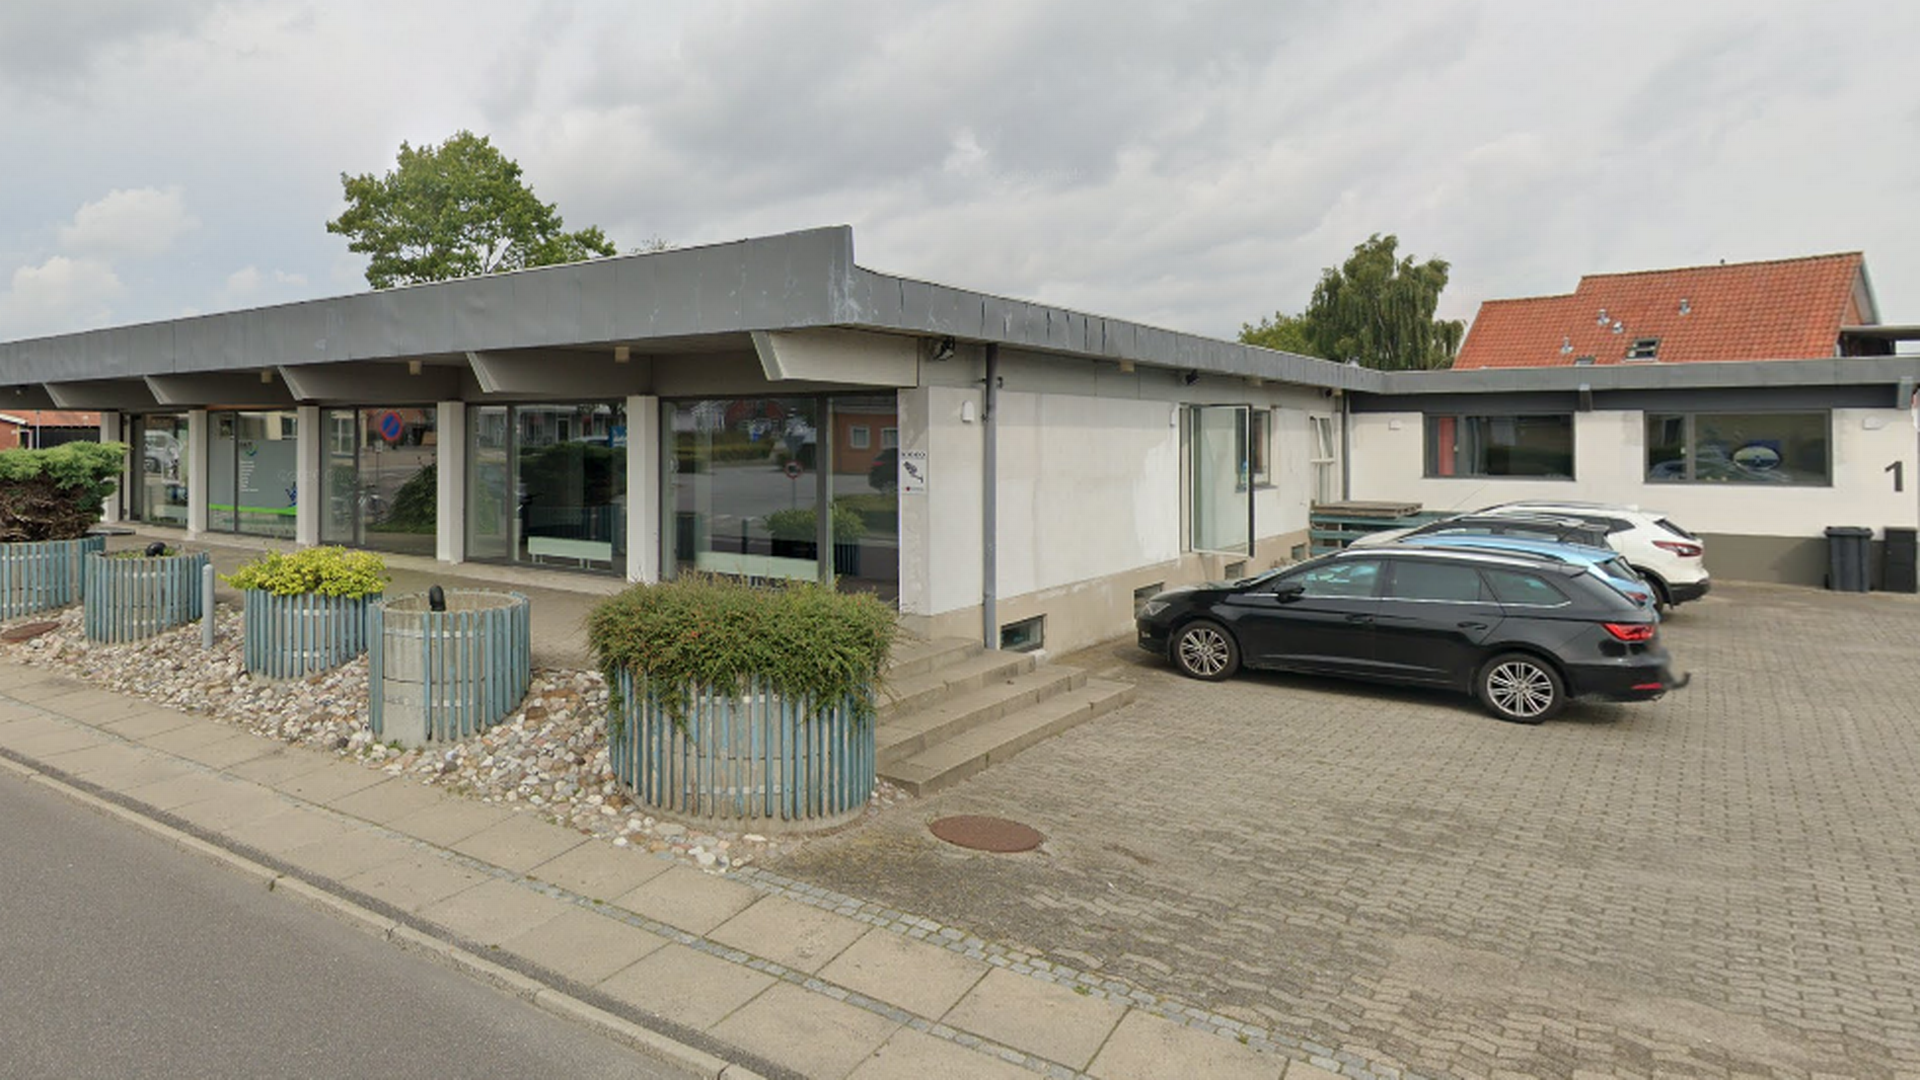 Momito Invest har adresse i ejendommen på Gl. Landevej 31/Landlystvej 1 i Erritsø nær Fredericia, som også var omdrejningspunktet i et af de konkursramte projekter. Ejendommen er sidenhen solgt på tvangsauktion med rabat. | Foto: Google Street View